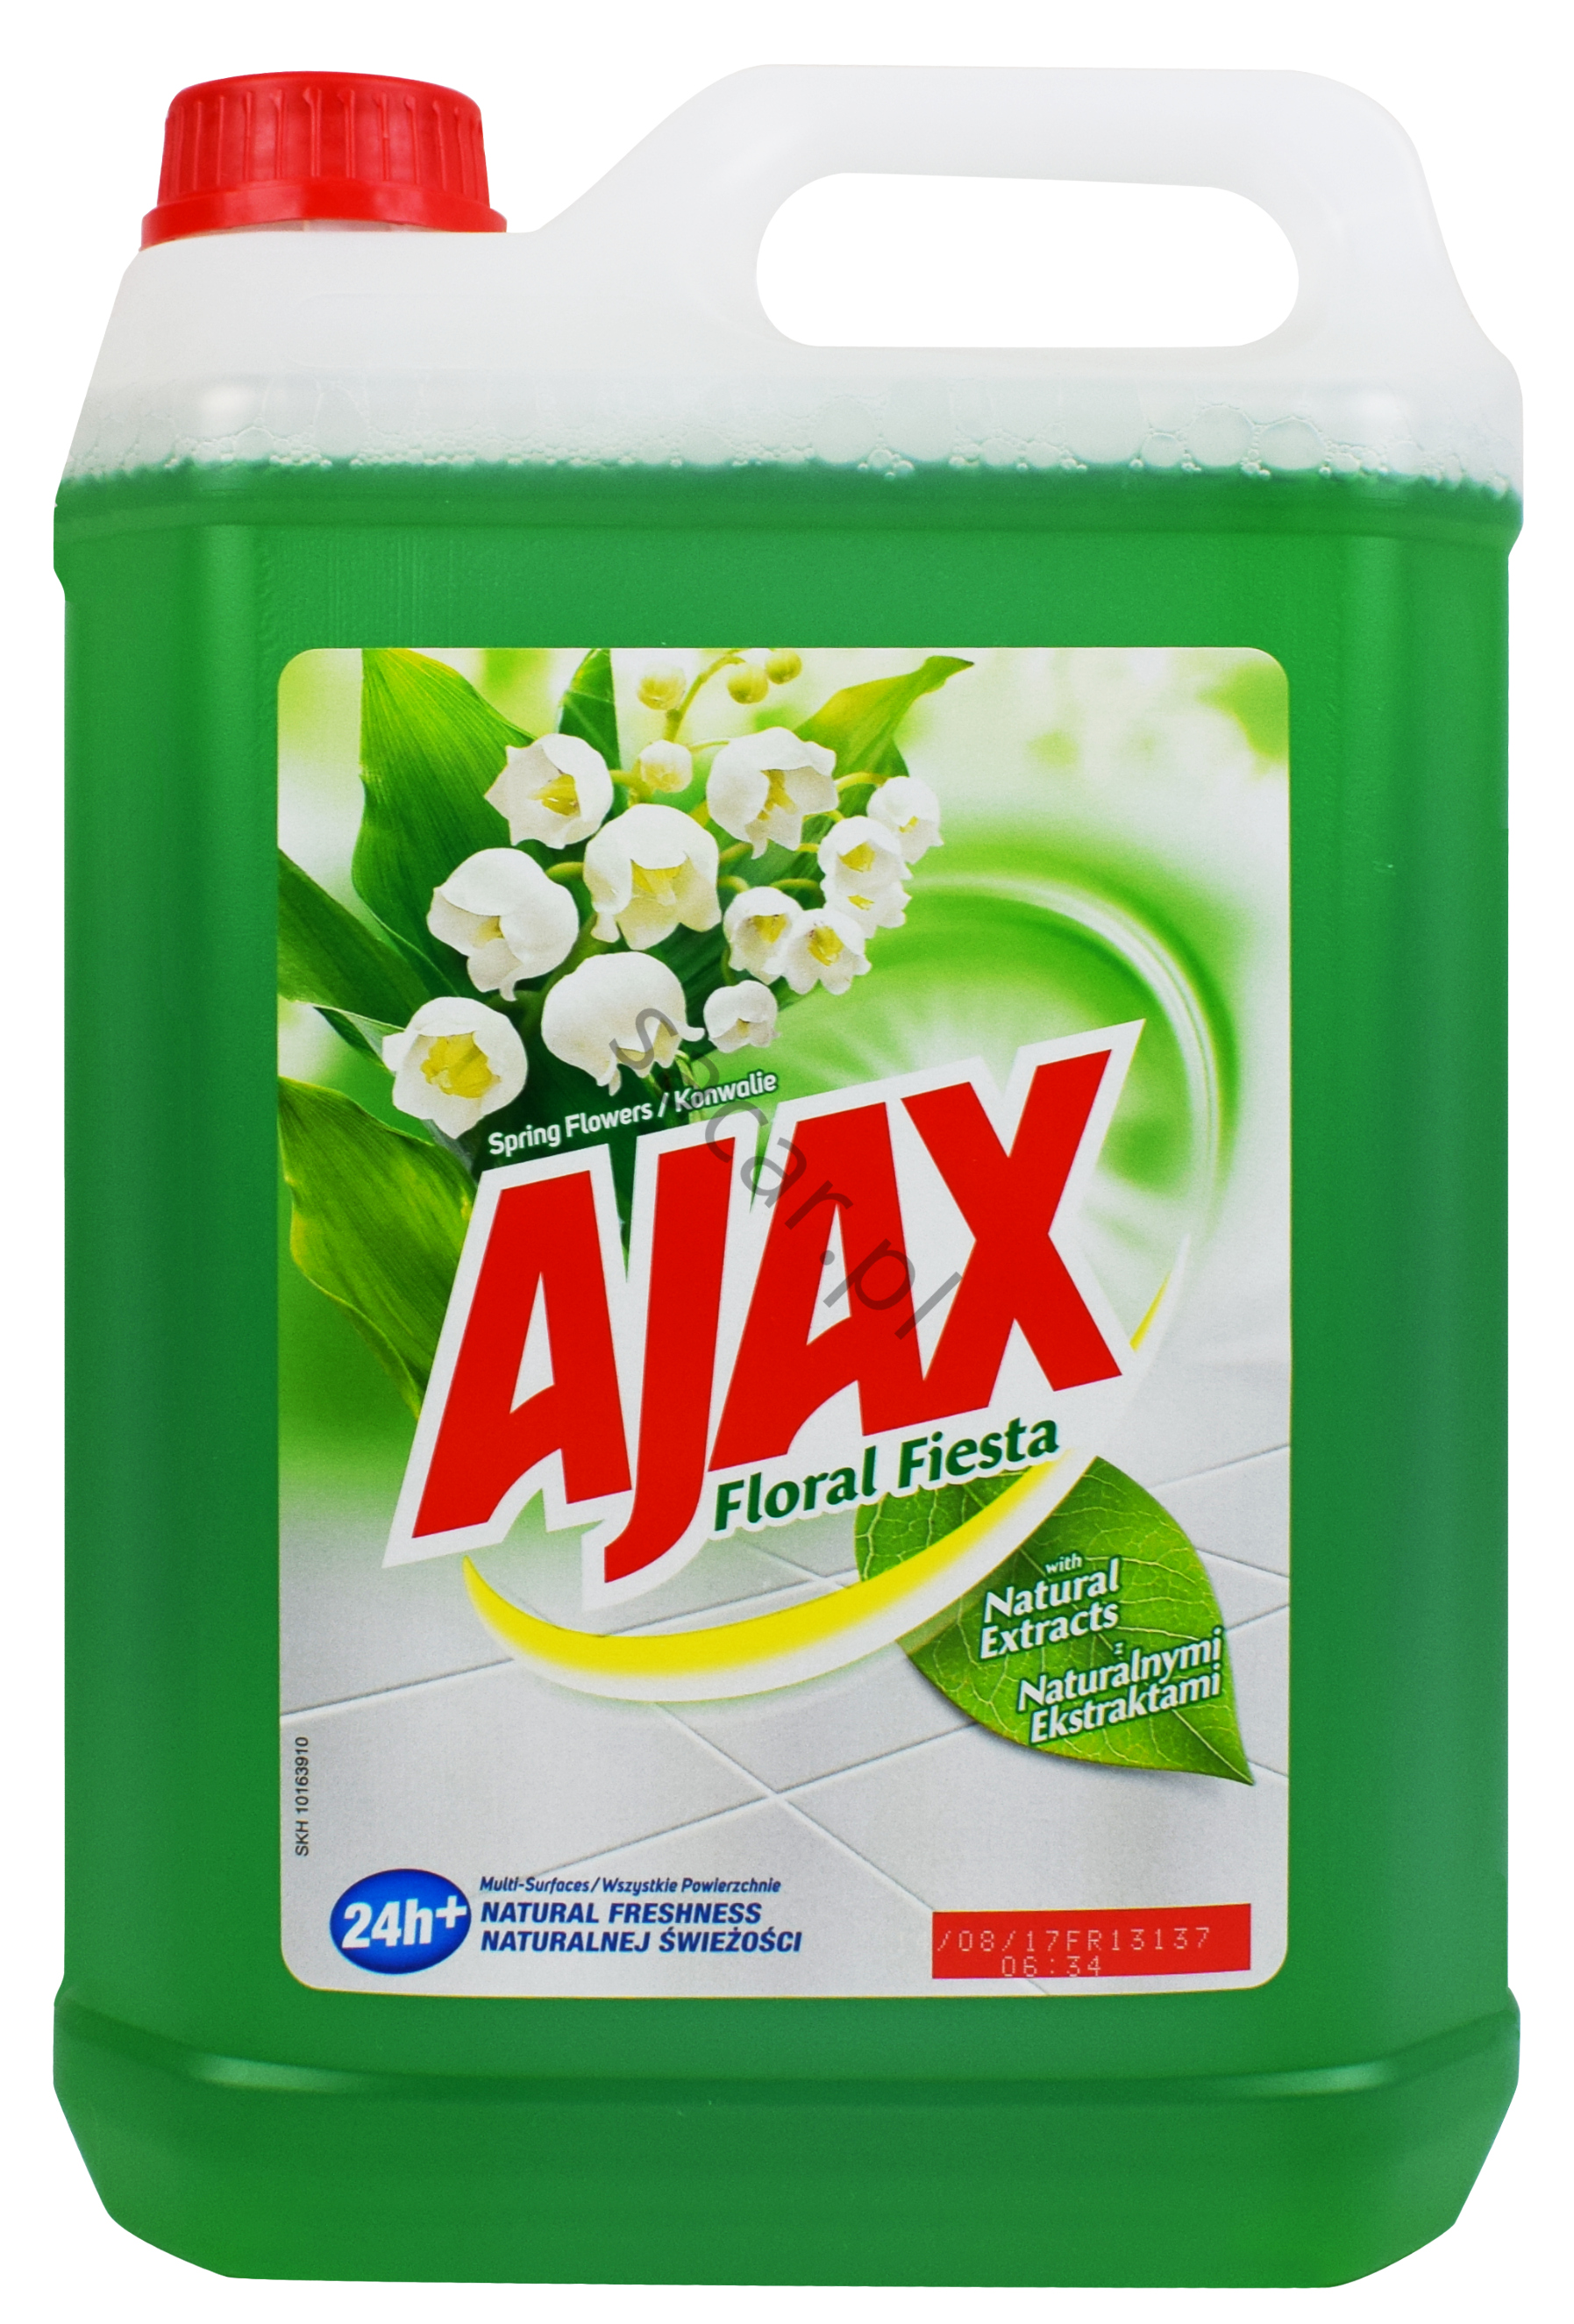 Ajax floral fiesta konwalia 5l